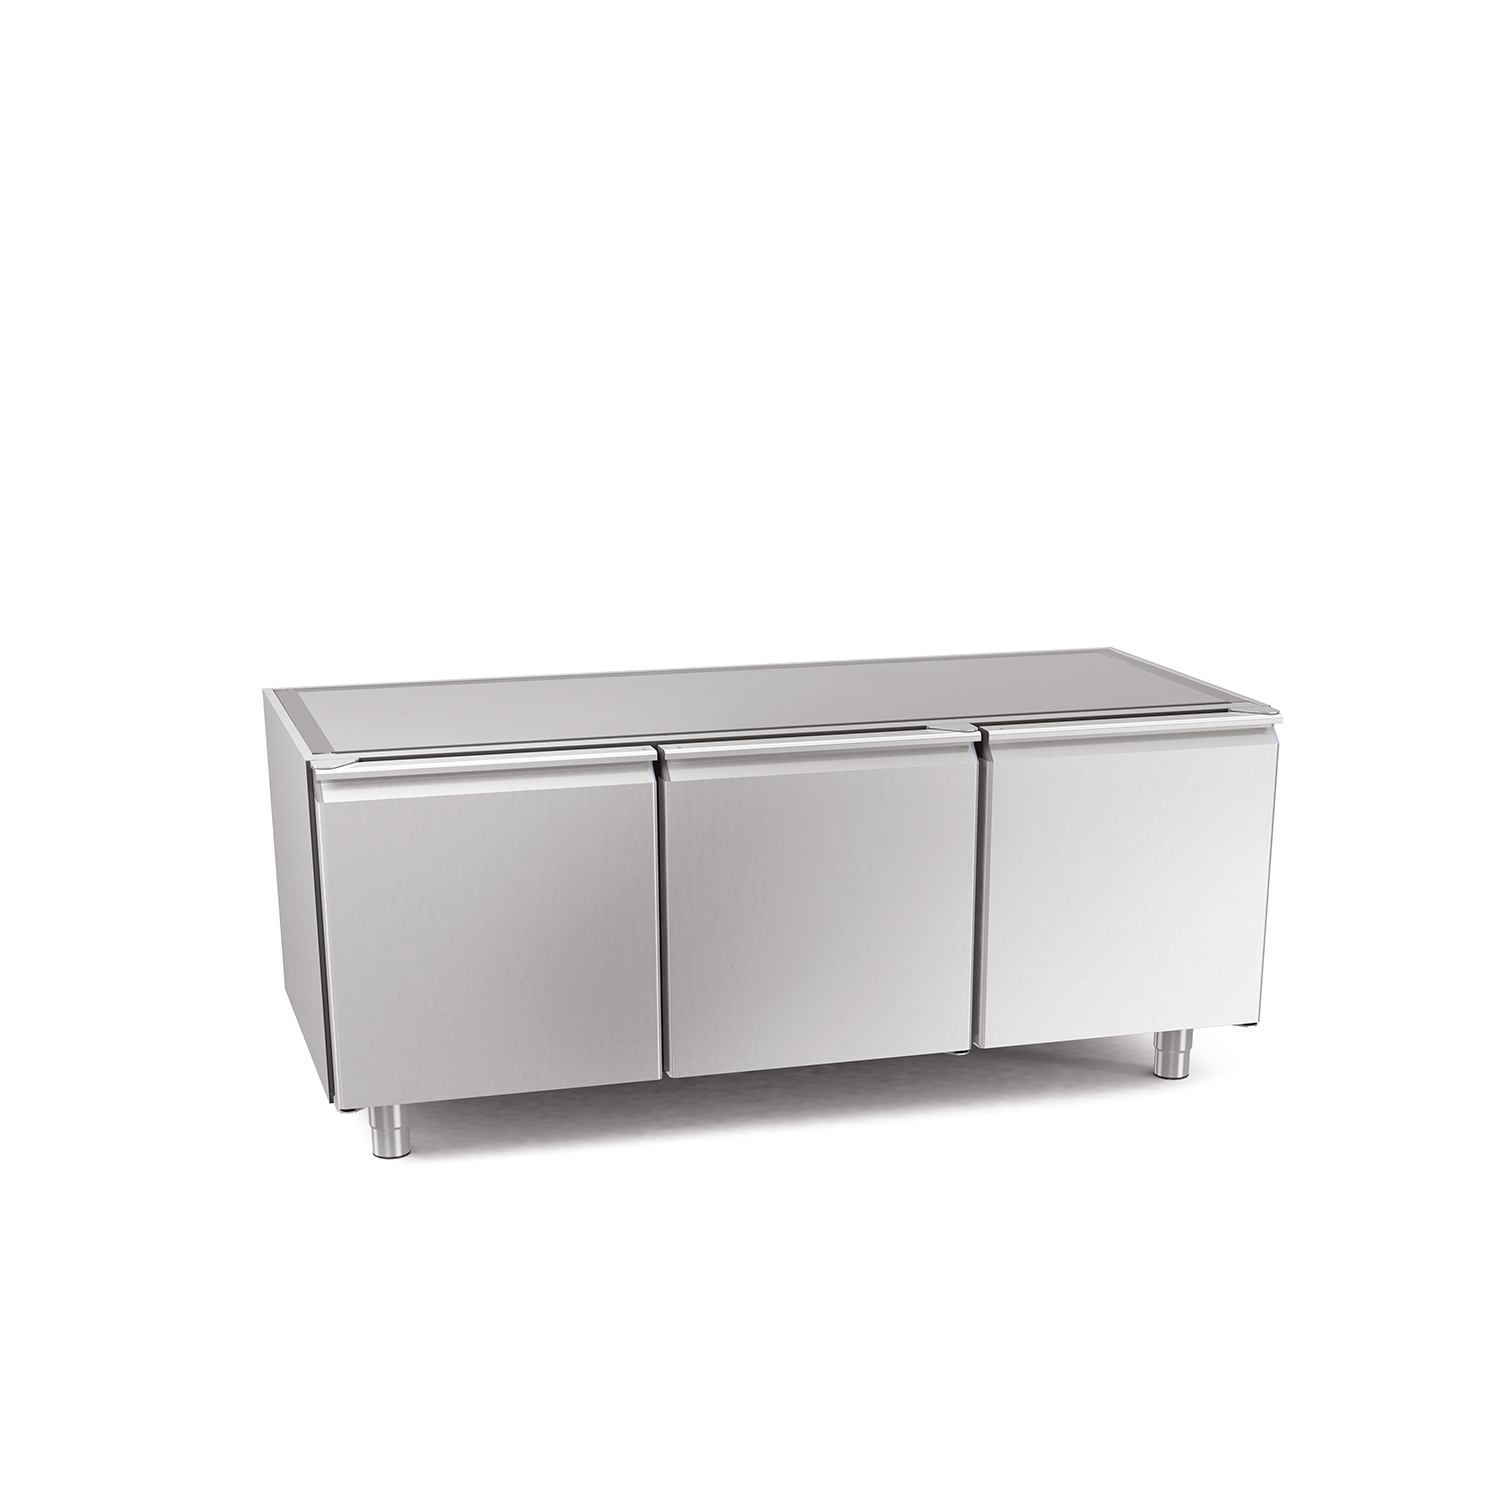 Kühltisch DAIQUIRI CONCEPT, B 1518 x T 700 x H 760 mm, mit 3 Kühlfächer, zentralgekühlt ohne I-Fach